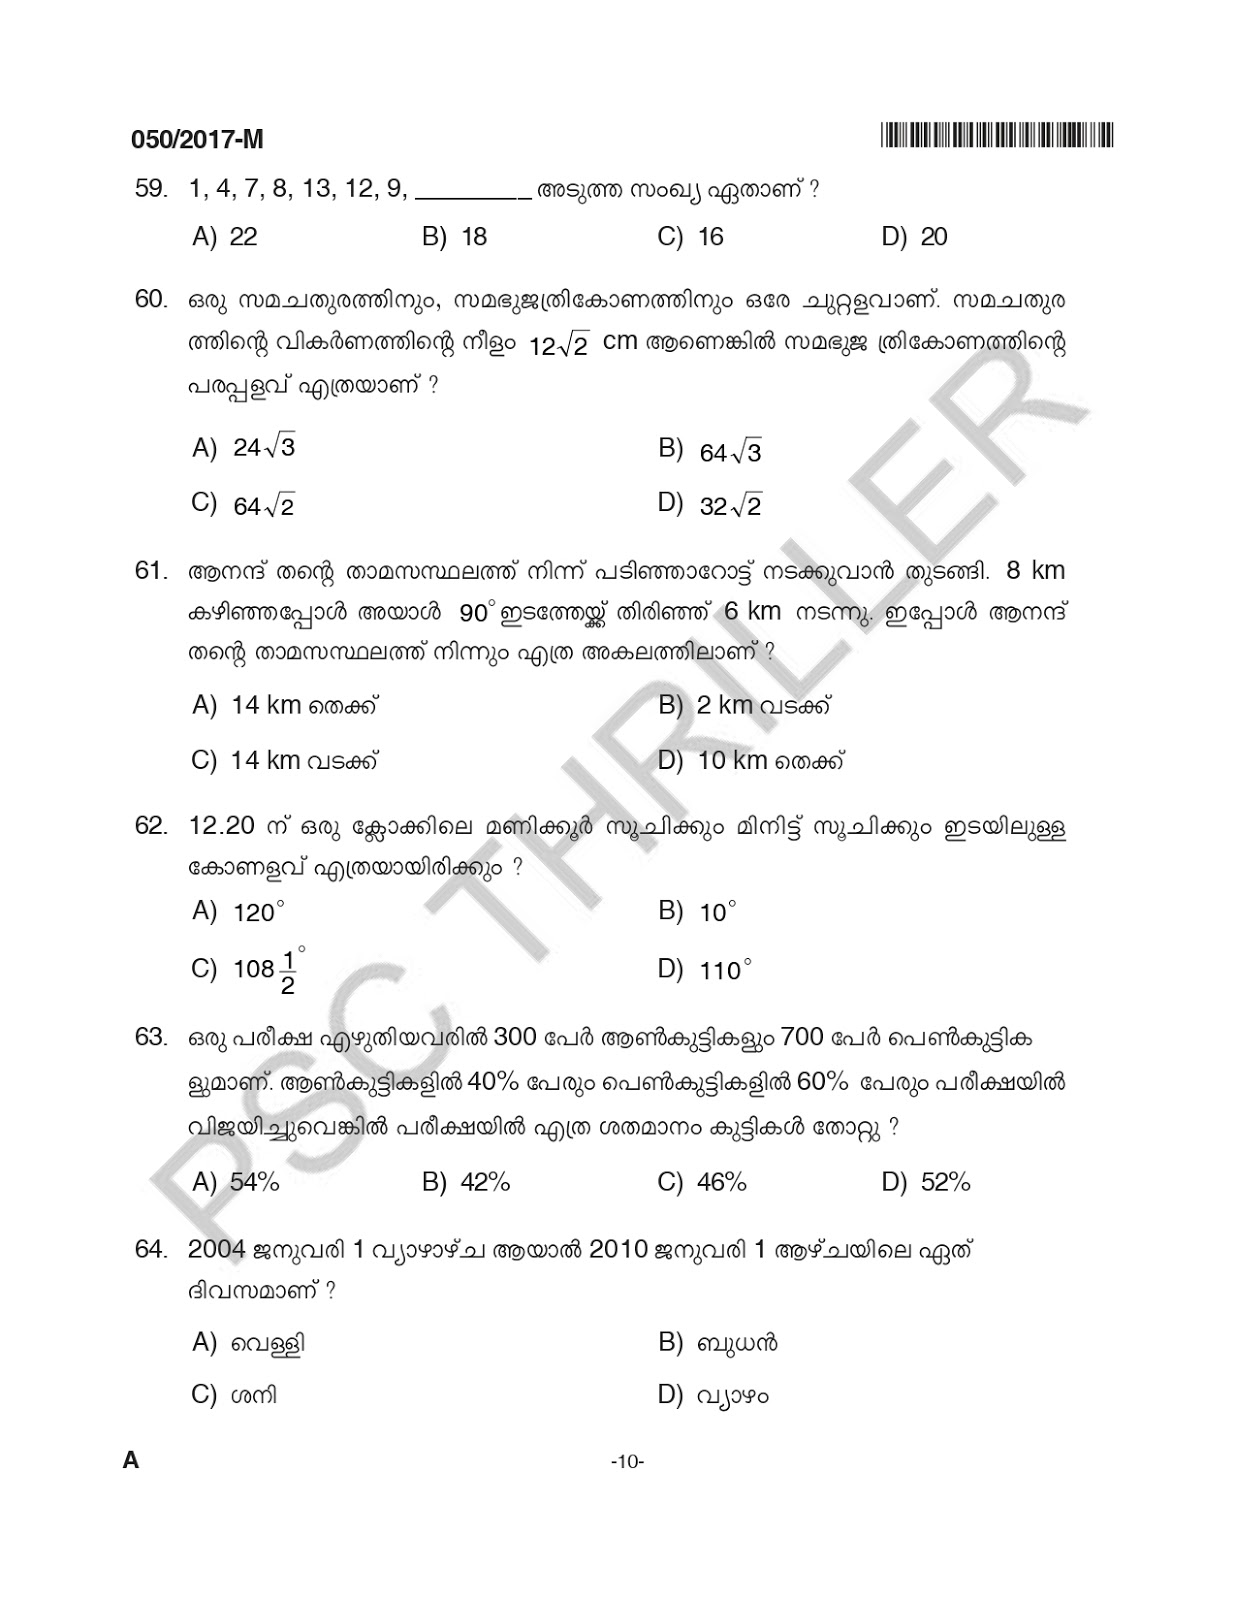 LDC-Question Paper -50/2017 -Kerala PSC